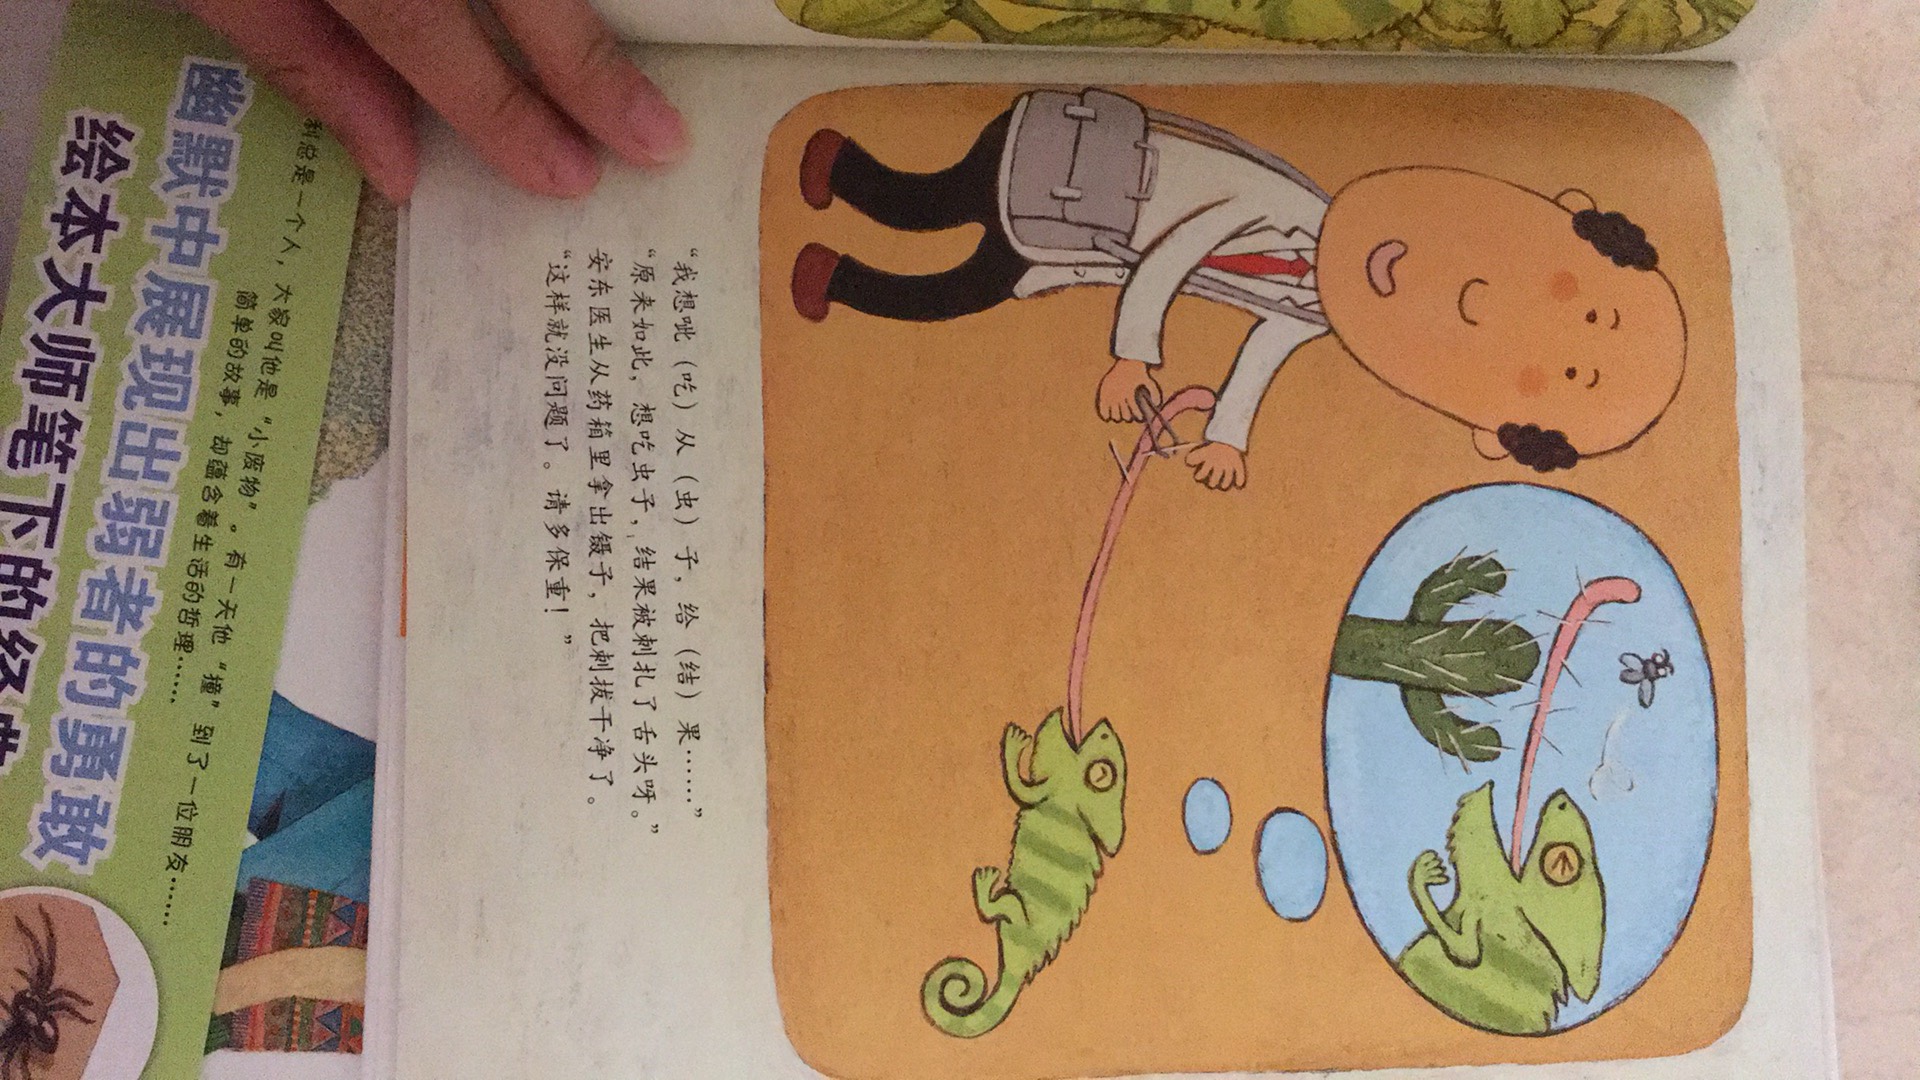 很有爱的一本书，宝宝喜欢小动物，看过之后会学安东医生给妈妈看病，很有趣